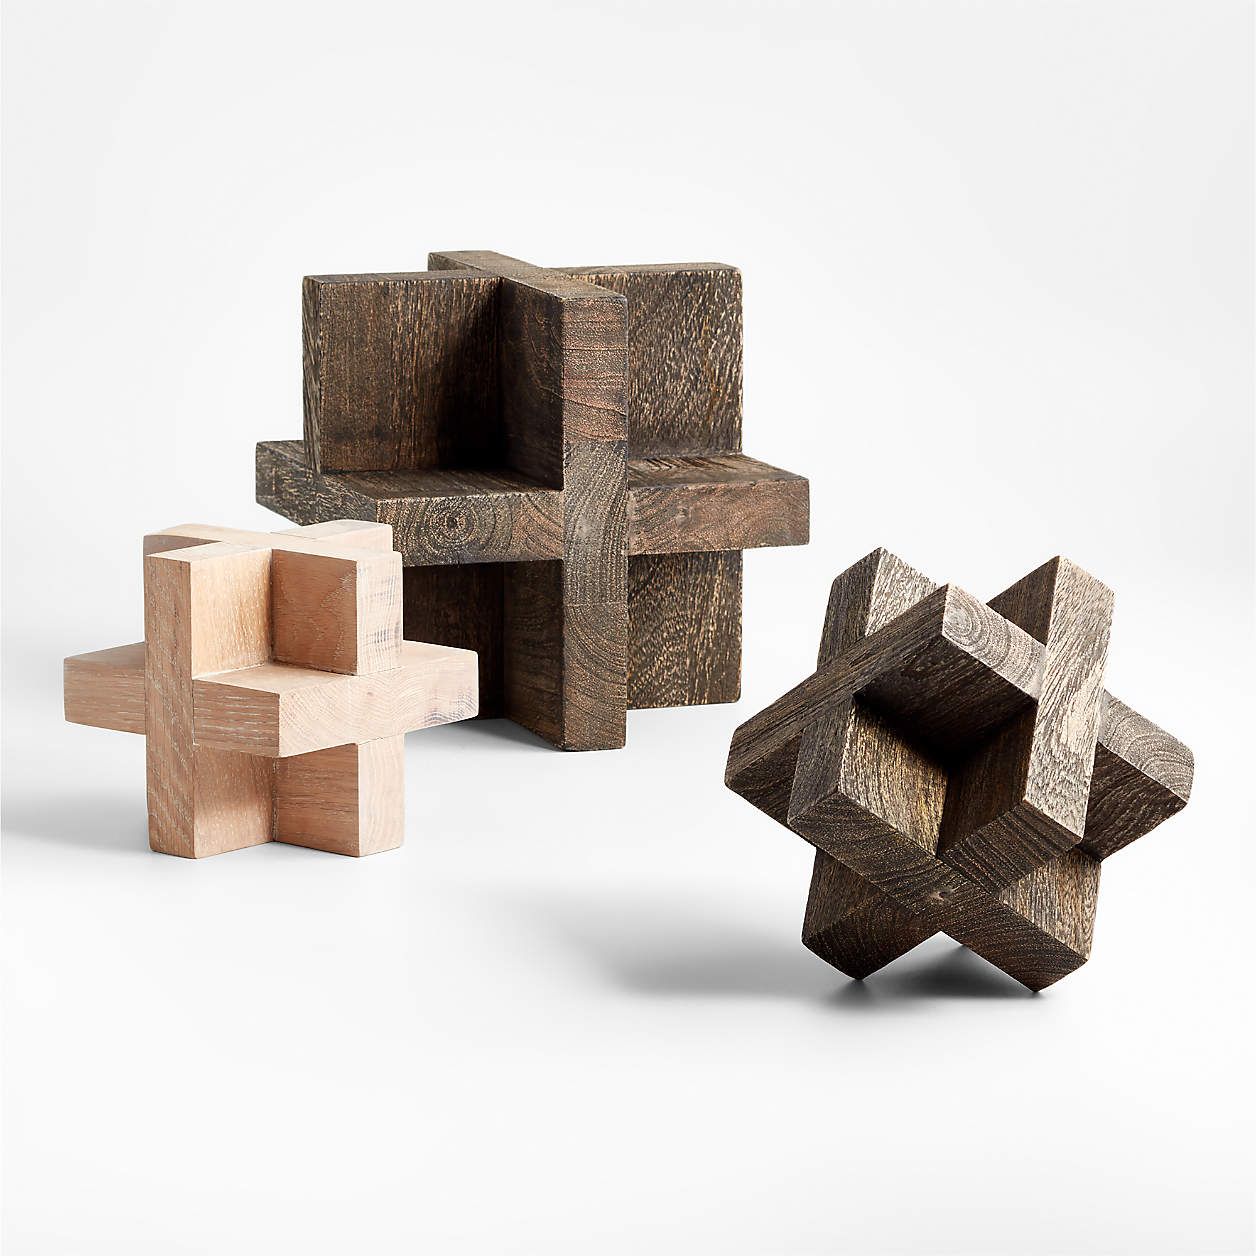 Black Wood Block Sculpture 6" + Reviews | Crate & Barrel | Crate & Barrel